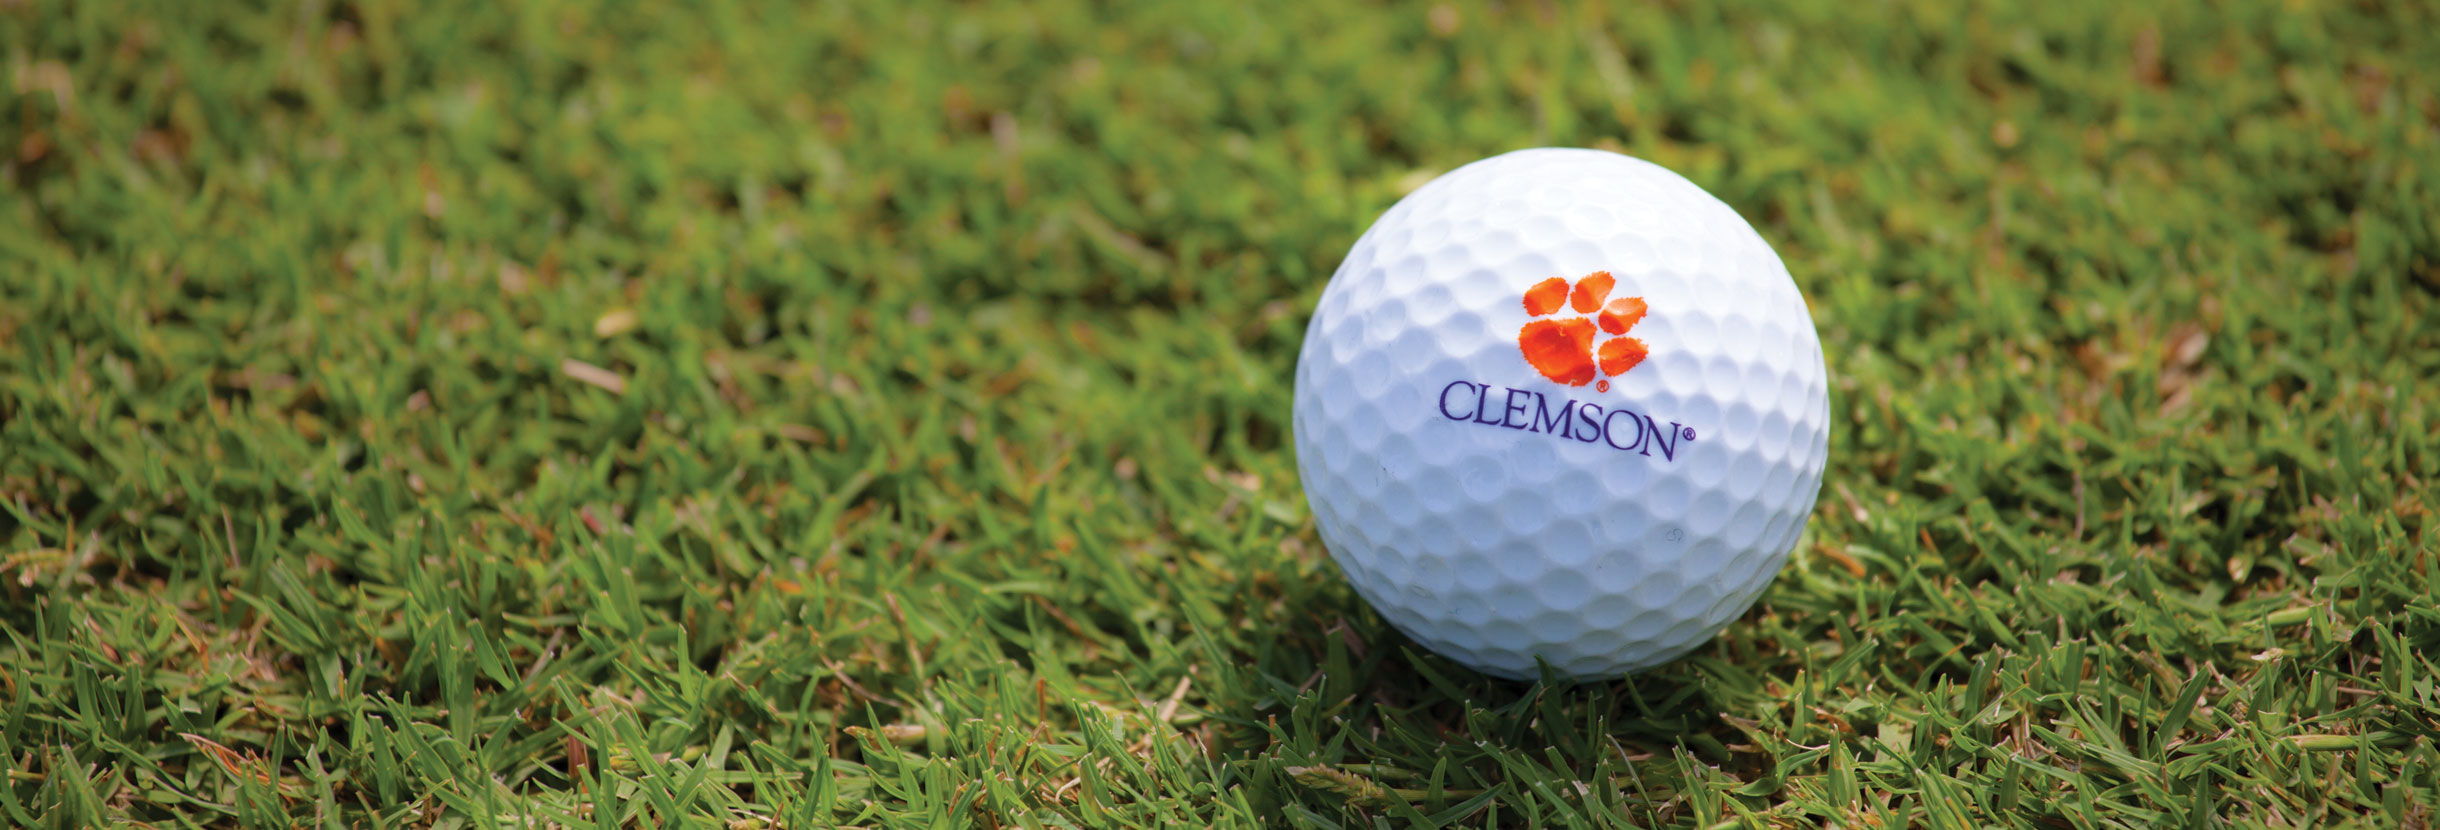 Clemson golf ball in the grass